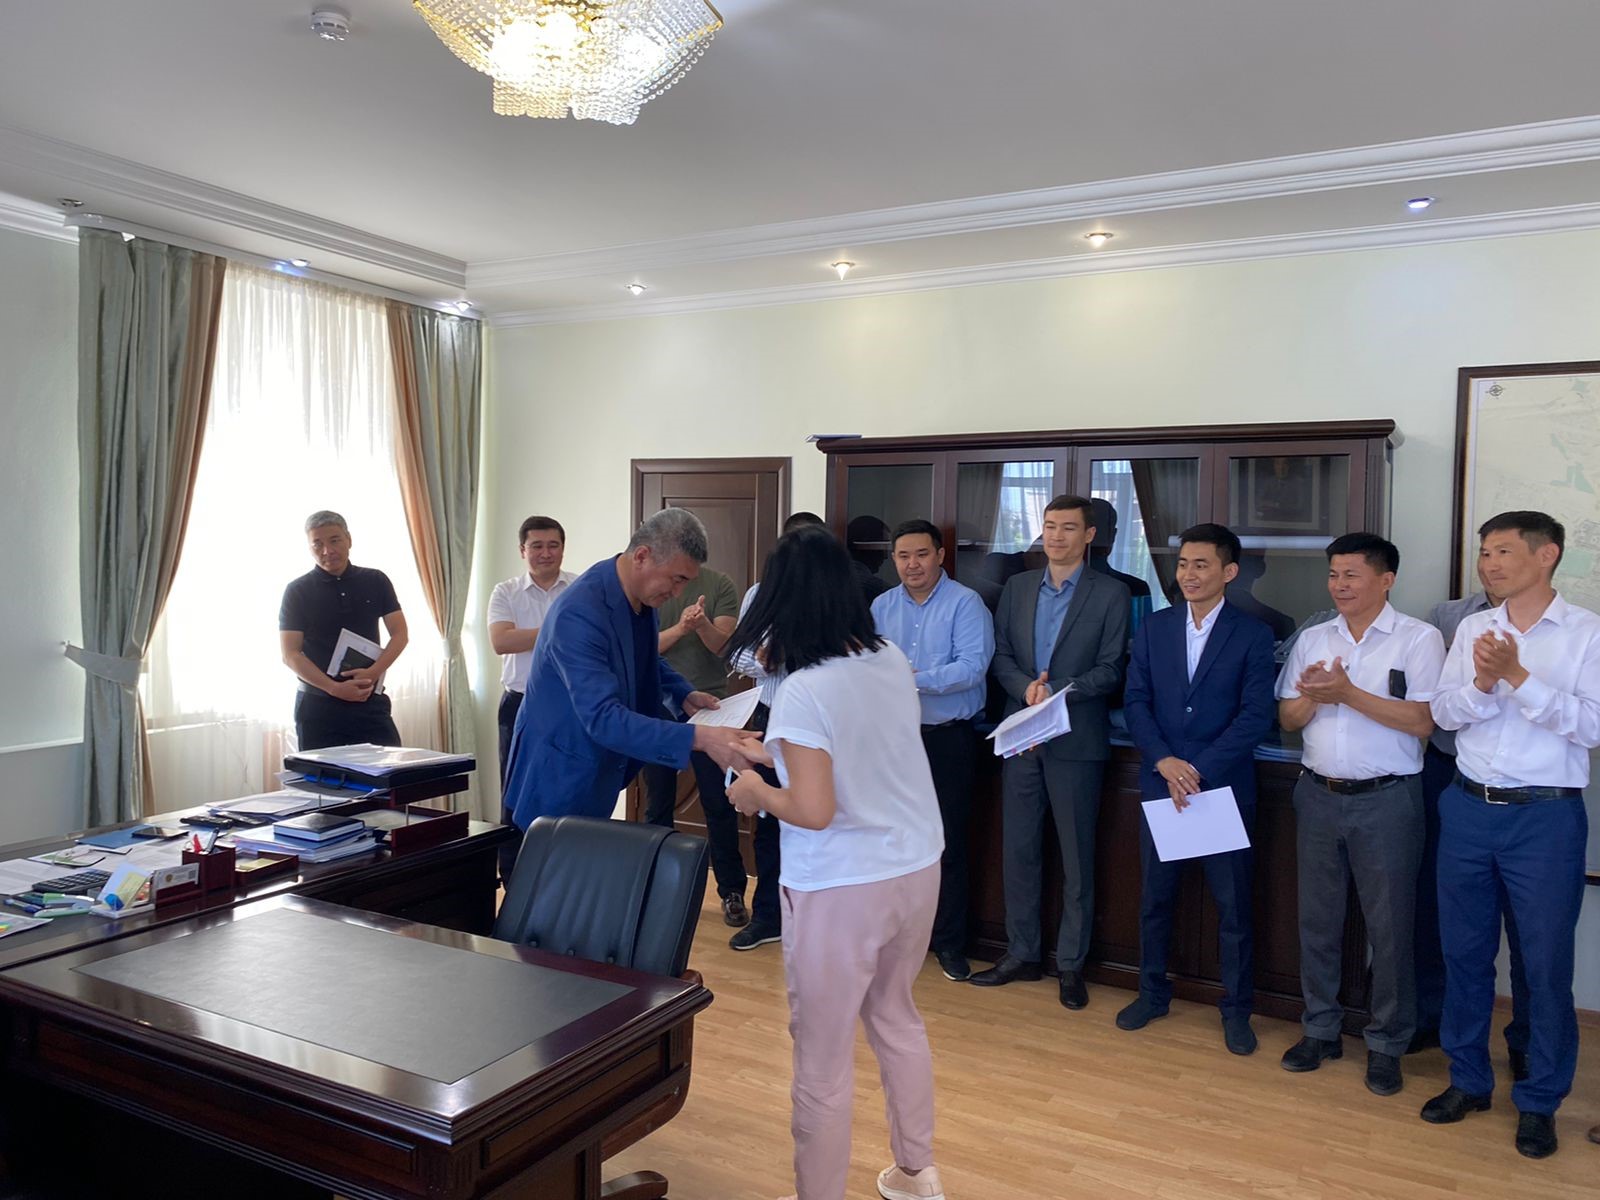 Руководитель ГУ «Управление строительства города Нур-Султан» Арсен Есенгелдинович поздравил сотрудников